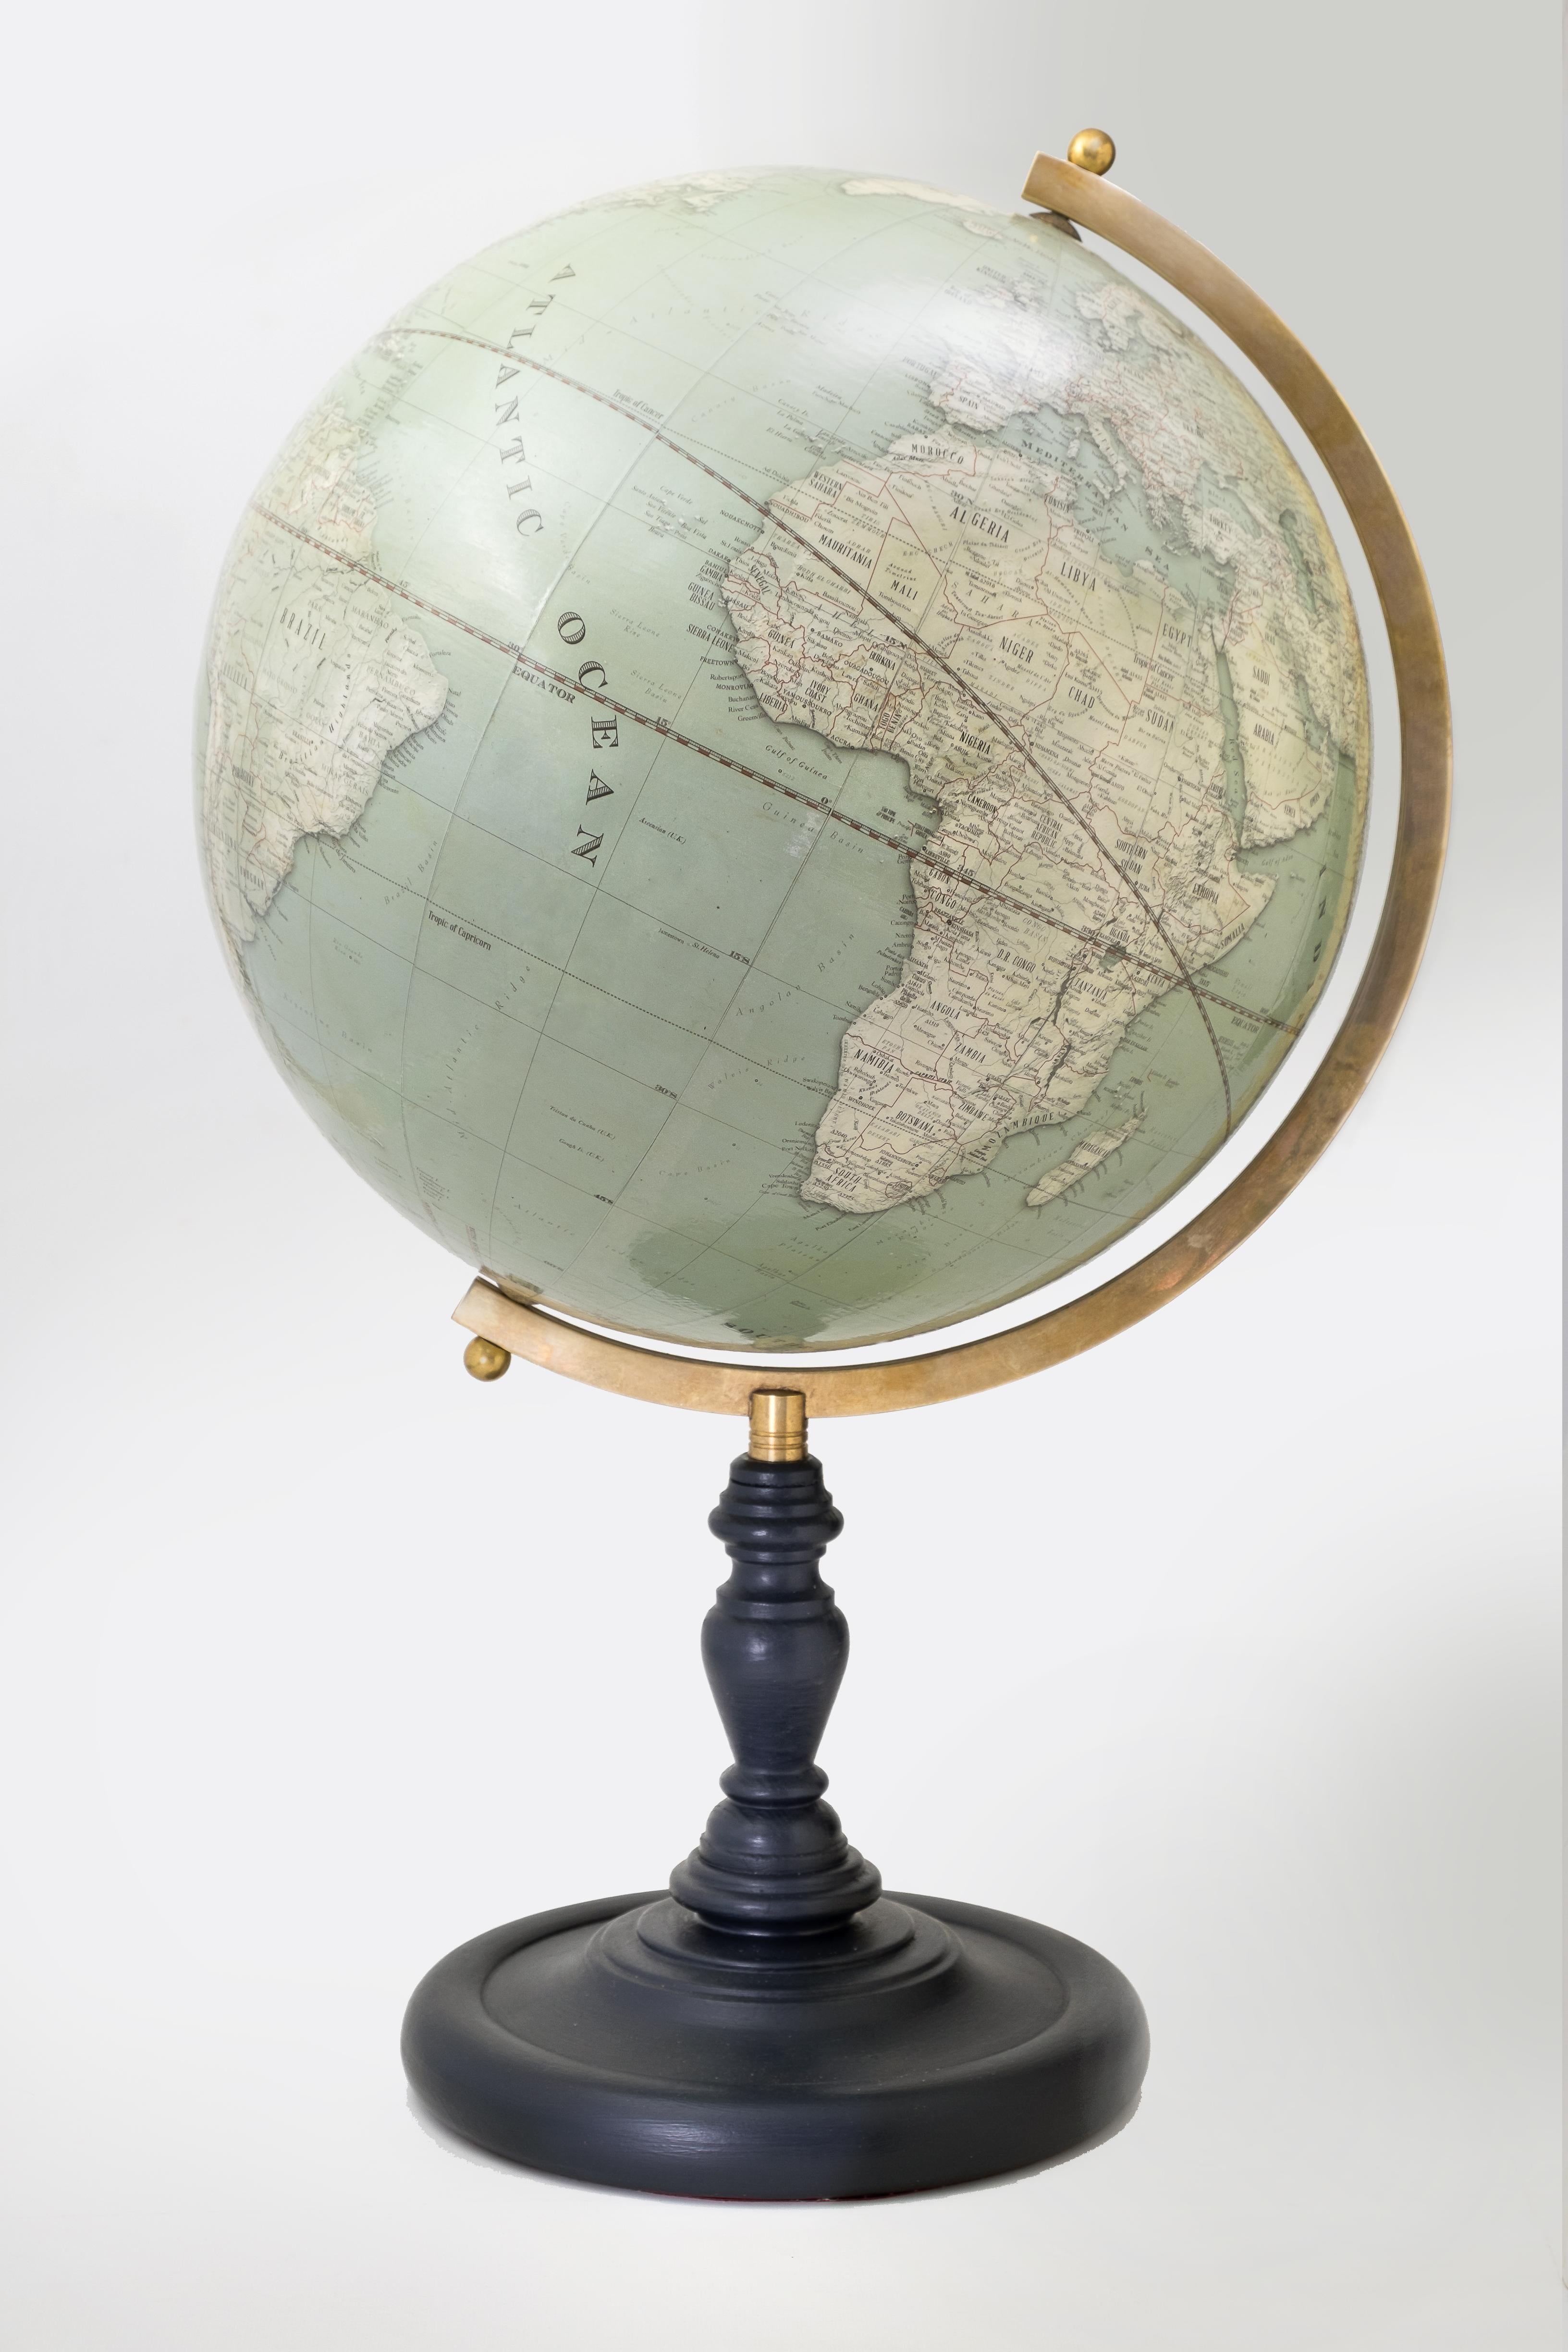 Dieser Globus mit einem Durchmesser von 15 Zoll weist die gleichen kartografischen Details auf wie die zeitgenössische Version, präsentiert sich aber im klassischen Vintage-Stil.
Die Kartografie wird ständig aktualisiert und umfasst 2780 Städte und